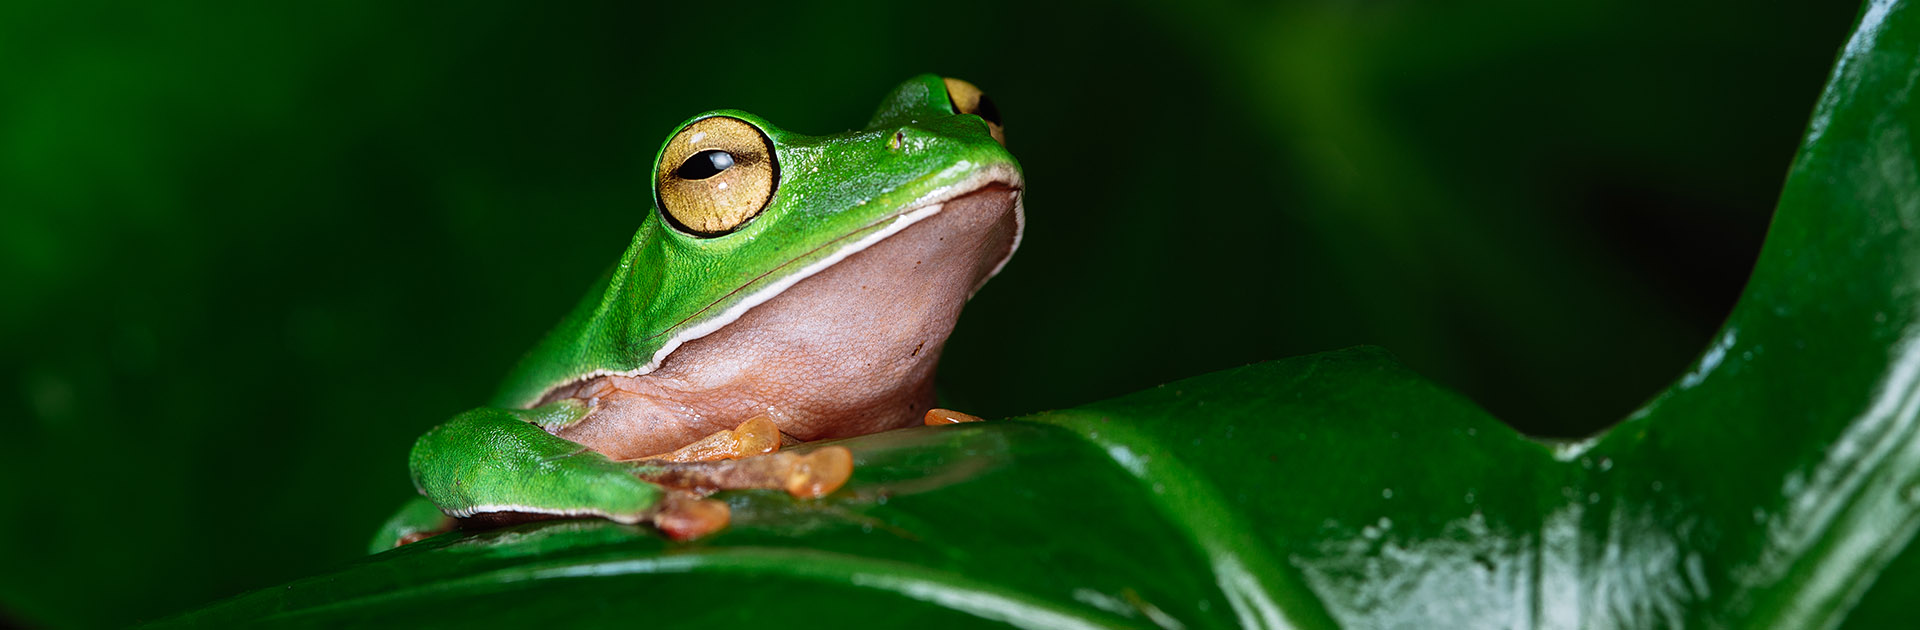 台灣的青蛙 蛙鳴資料庫聲音檔線上試聽及下載